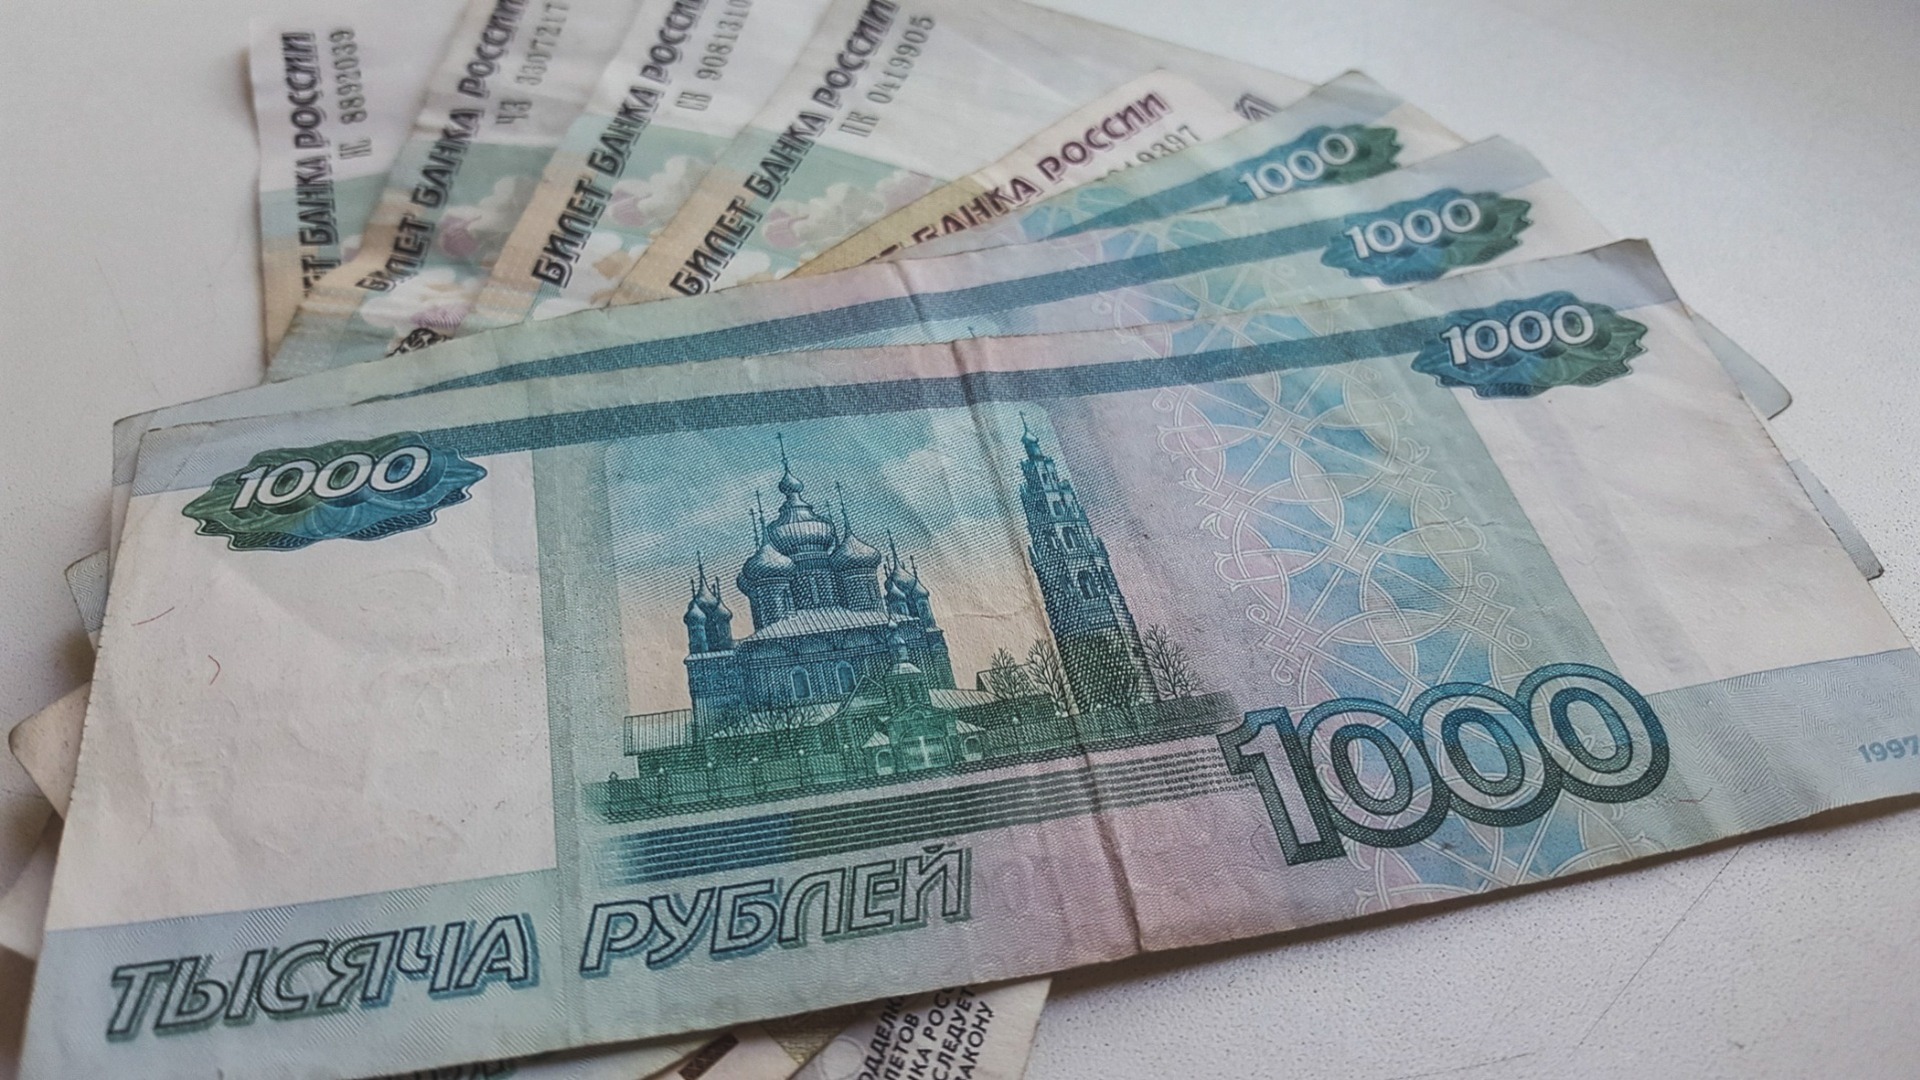 Директор МУПа погасил долги на 1,5 млн рублей на предприятии в Тугулыме